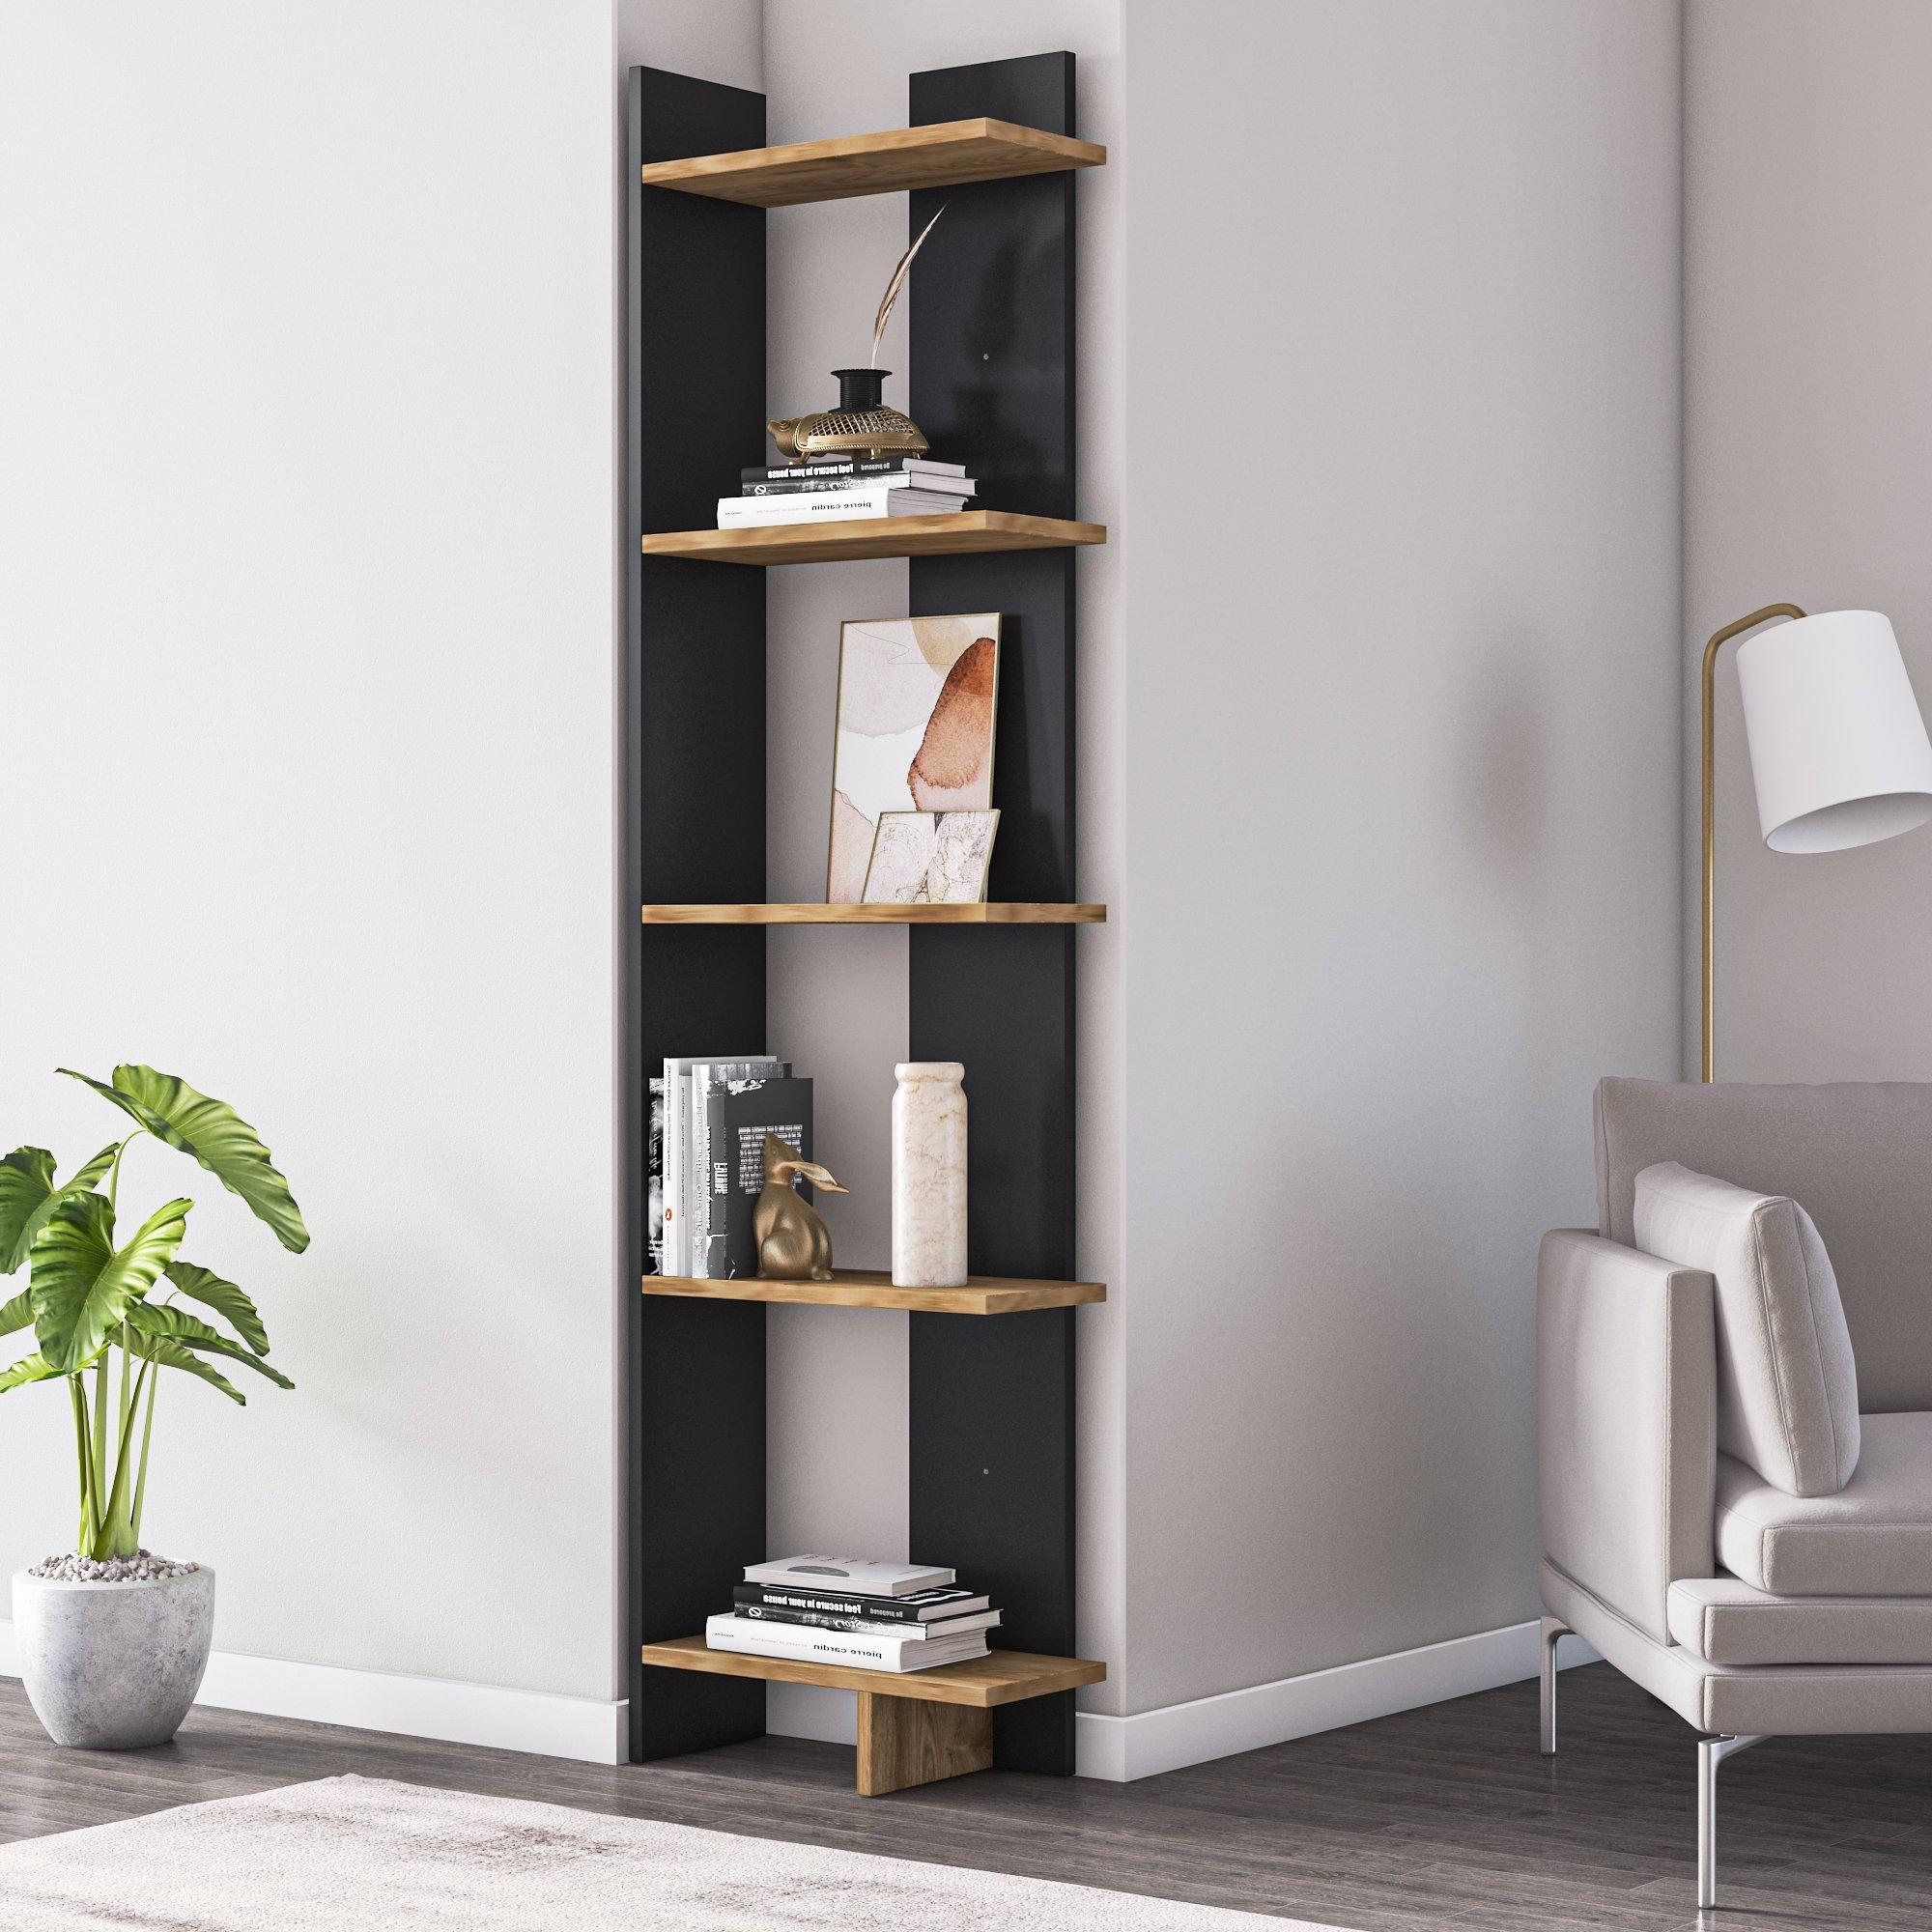 Decorotika Alis 5-Shelves Modern Corner Unit Bookcase Shelving Unit - Black & Oak